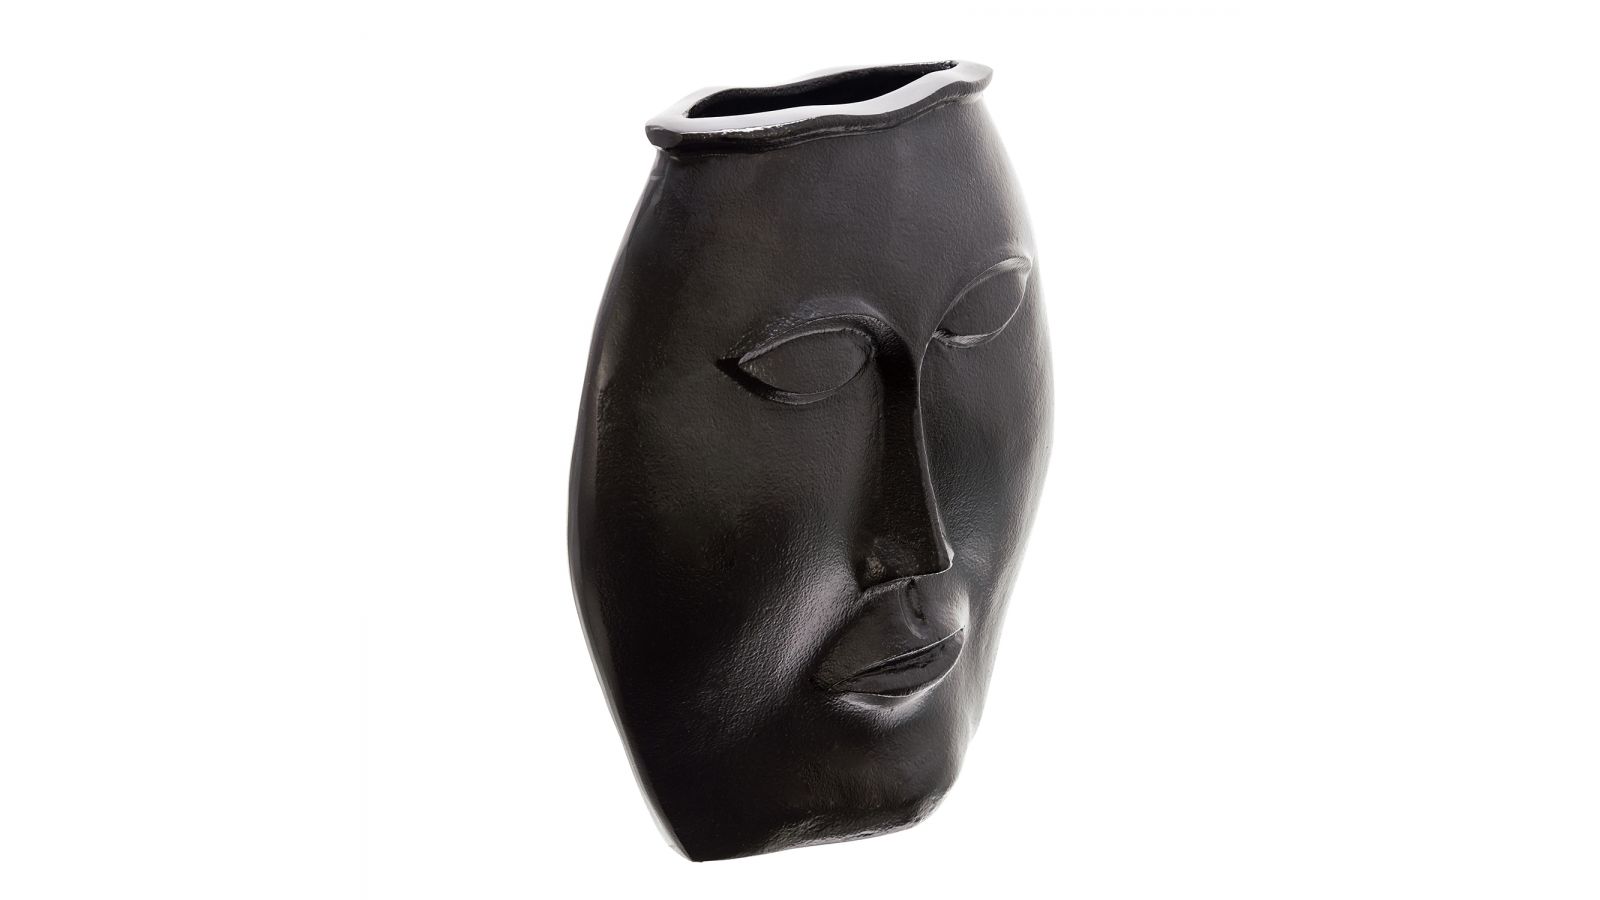 Black Matte Face Vase